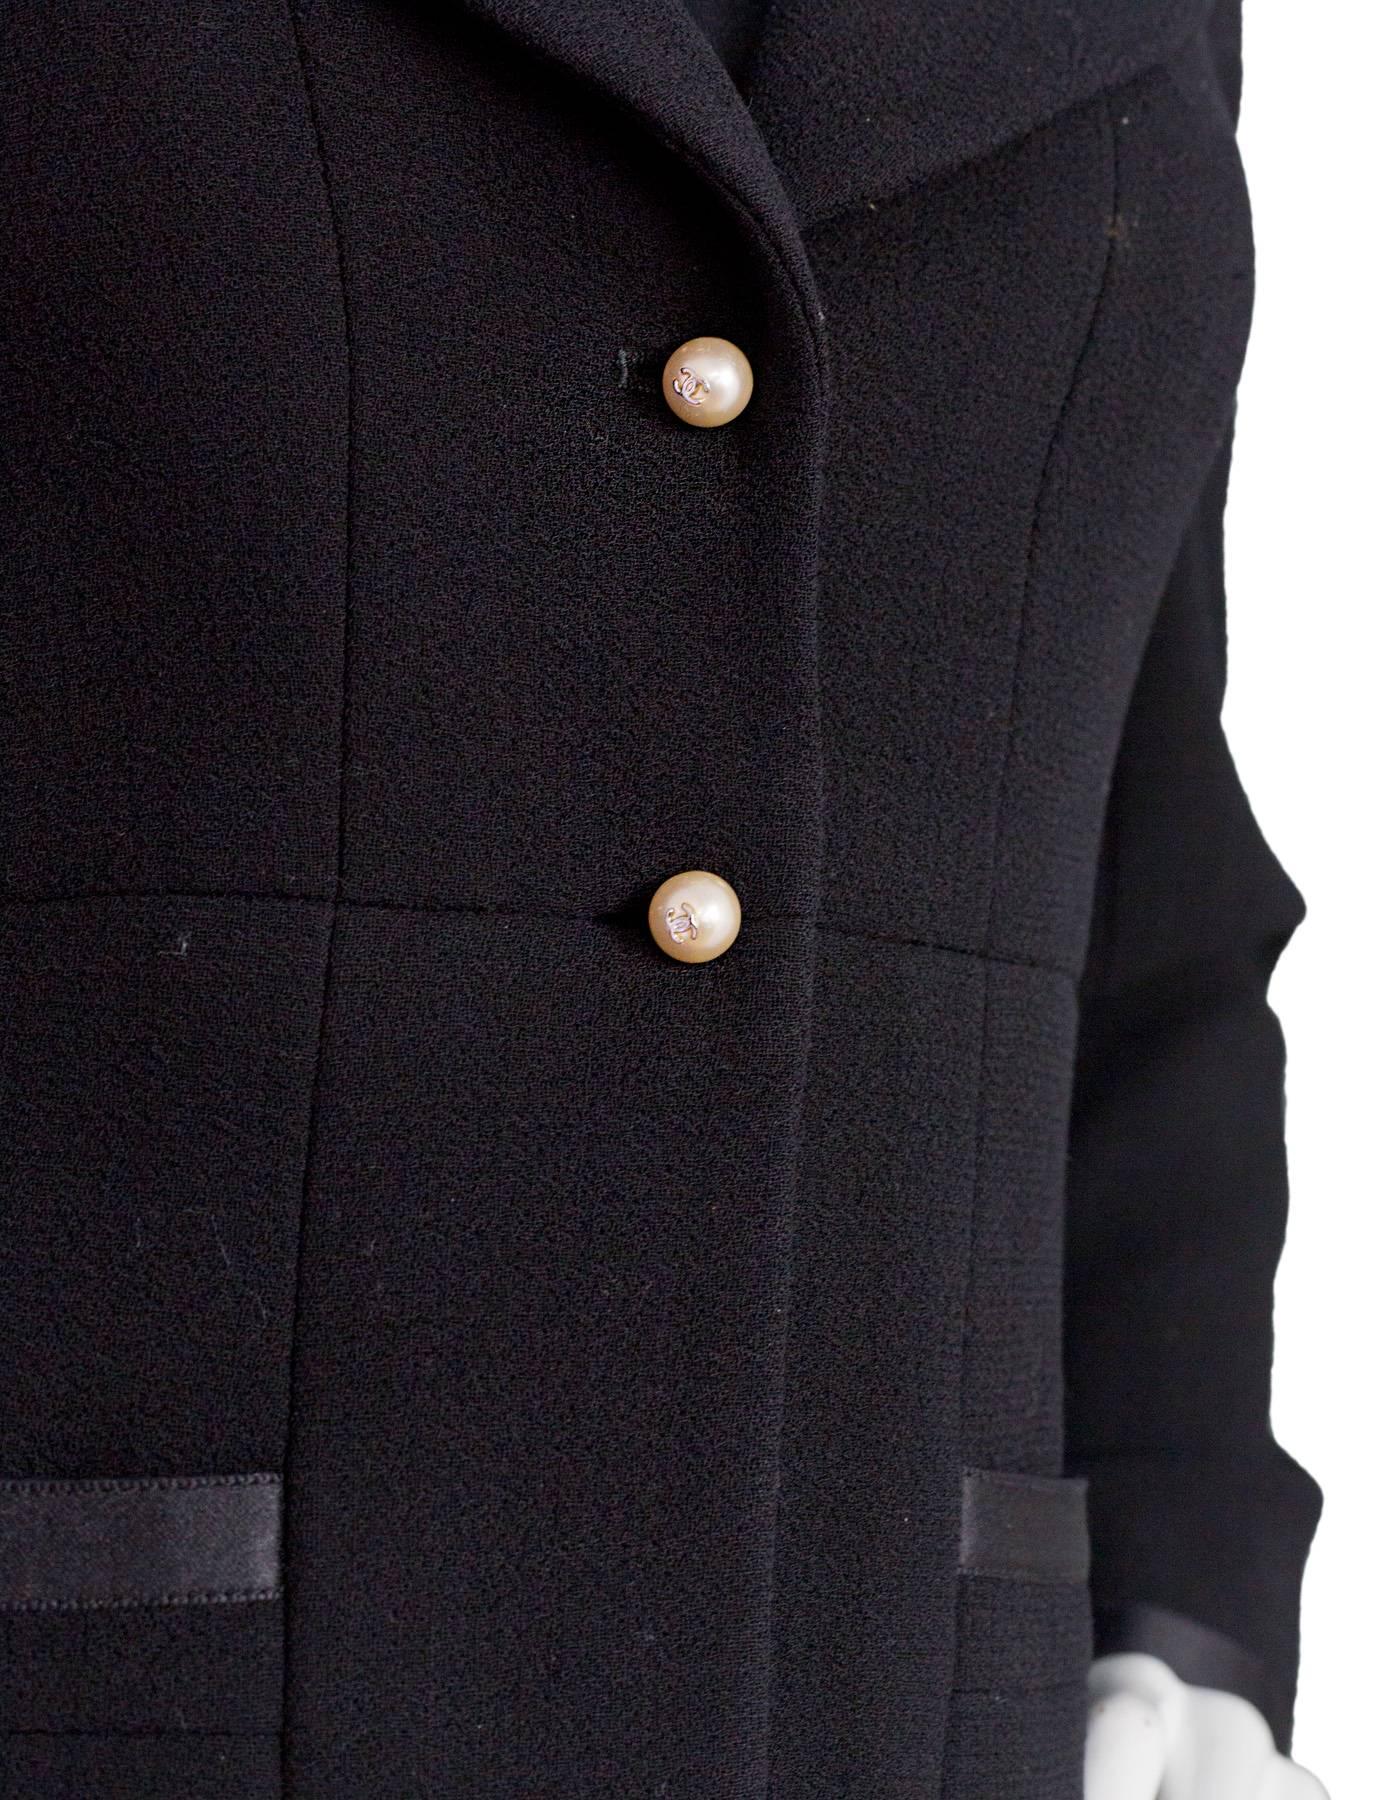 Women's Chanel Black Wool 2 Piece Skirt Suit sz FR40